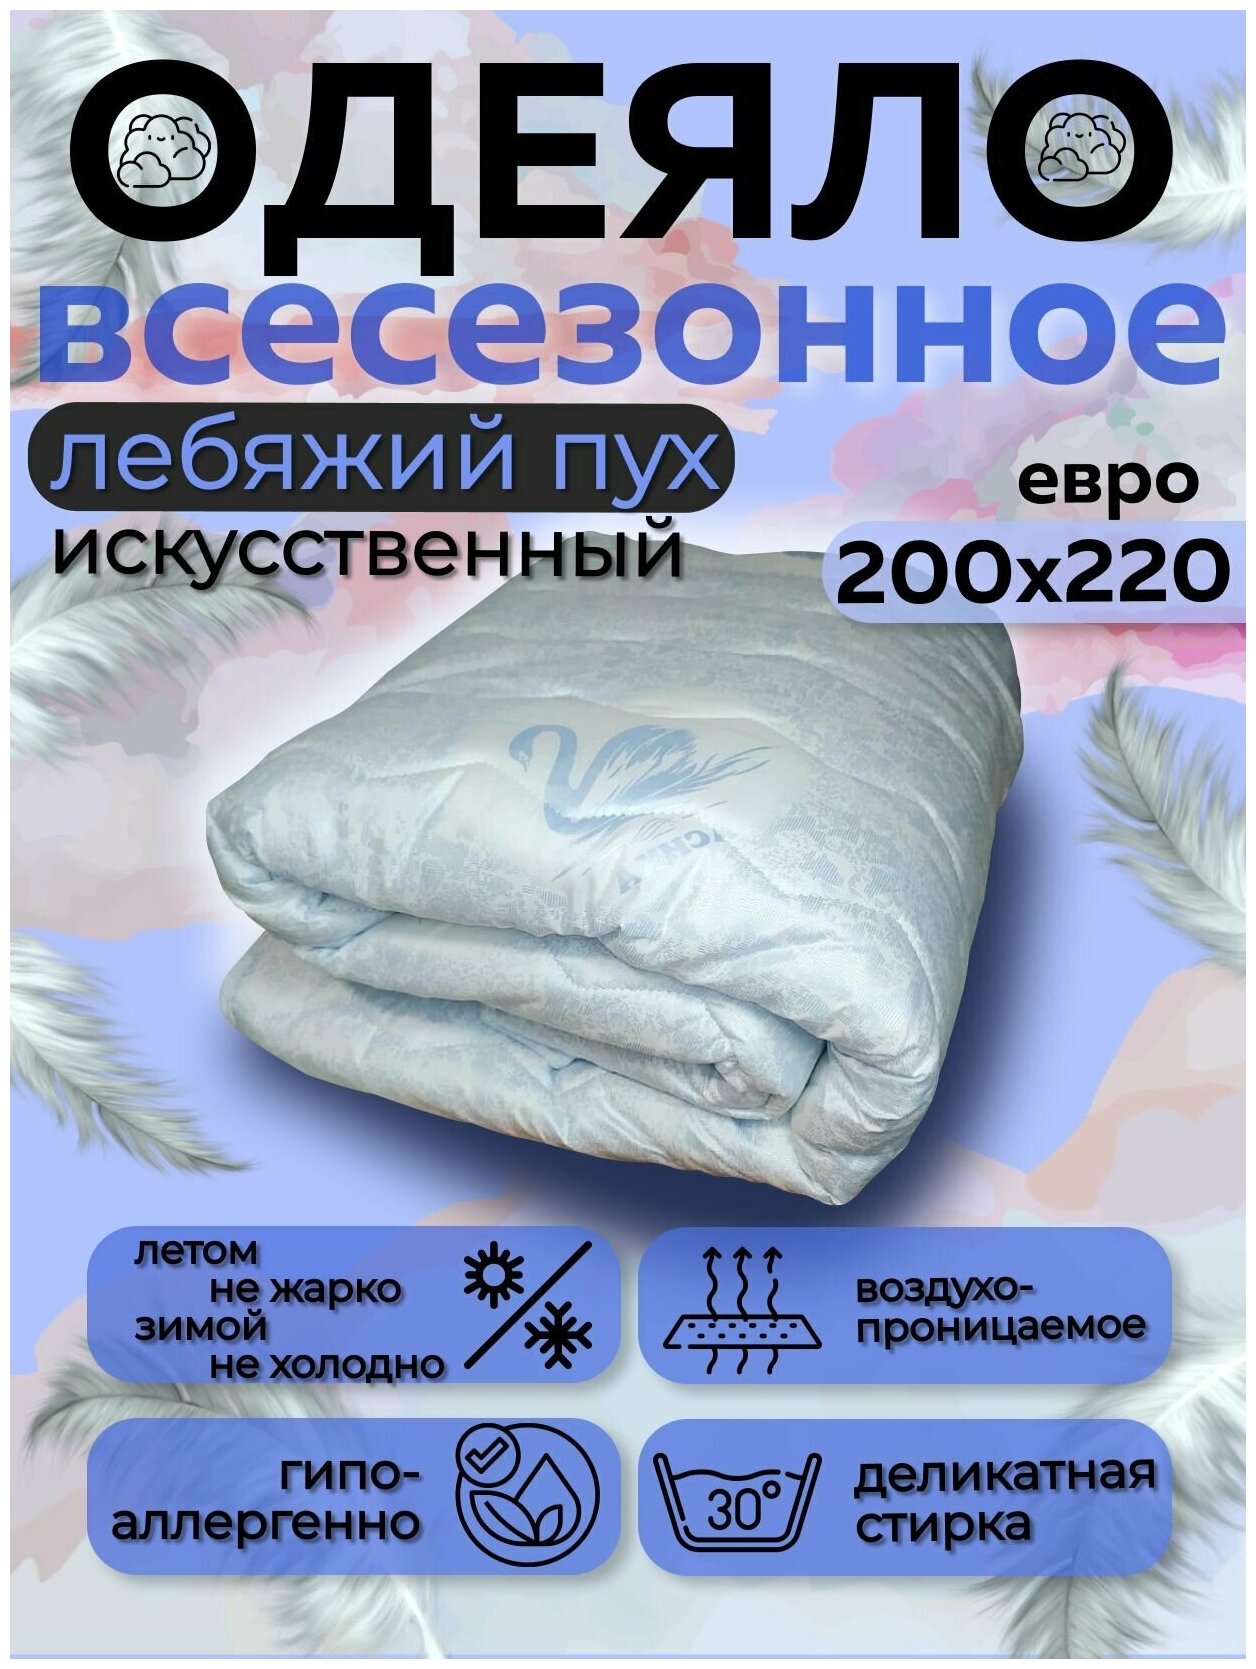 Одеяло Асика Евро размер 200x220 см, наполнитель искусственный лебяжий пух